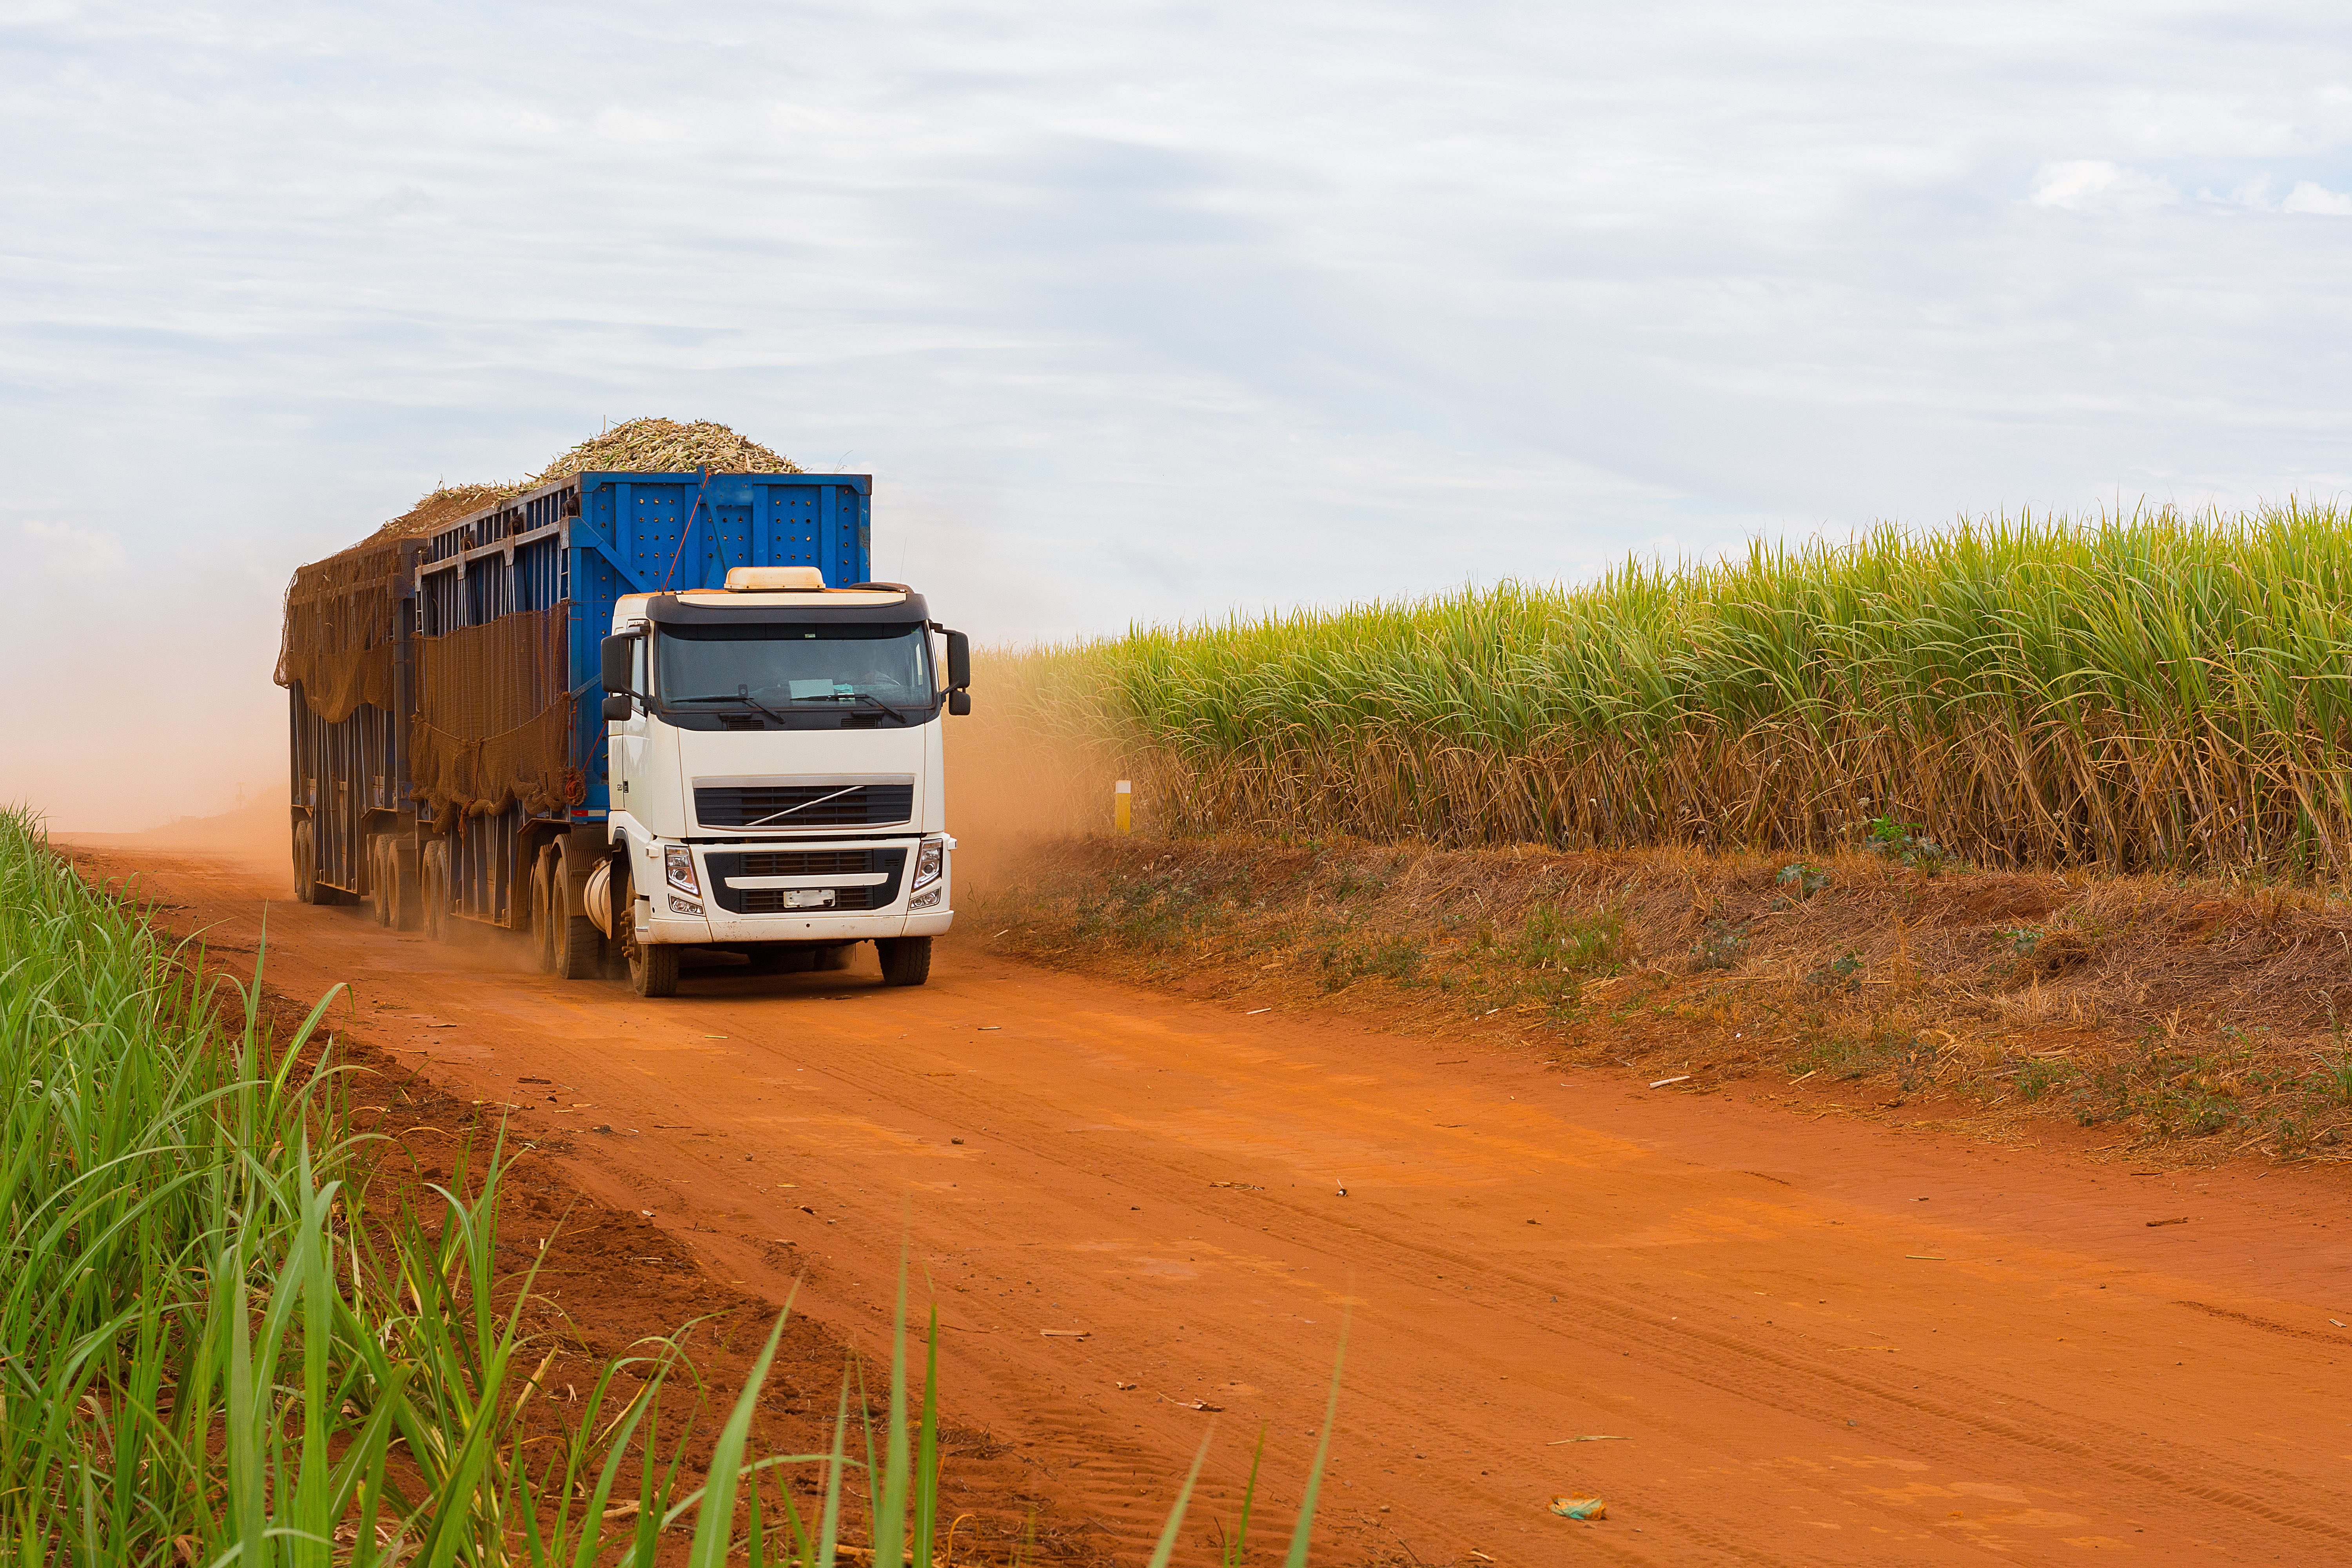 Ipiranga Agroindustrial leiloa caminhões e bens agrícolas com até 80% de desconto